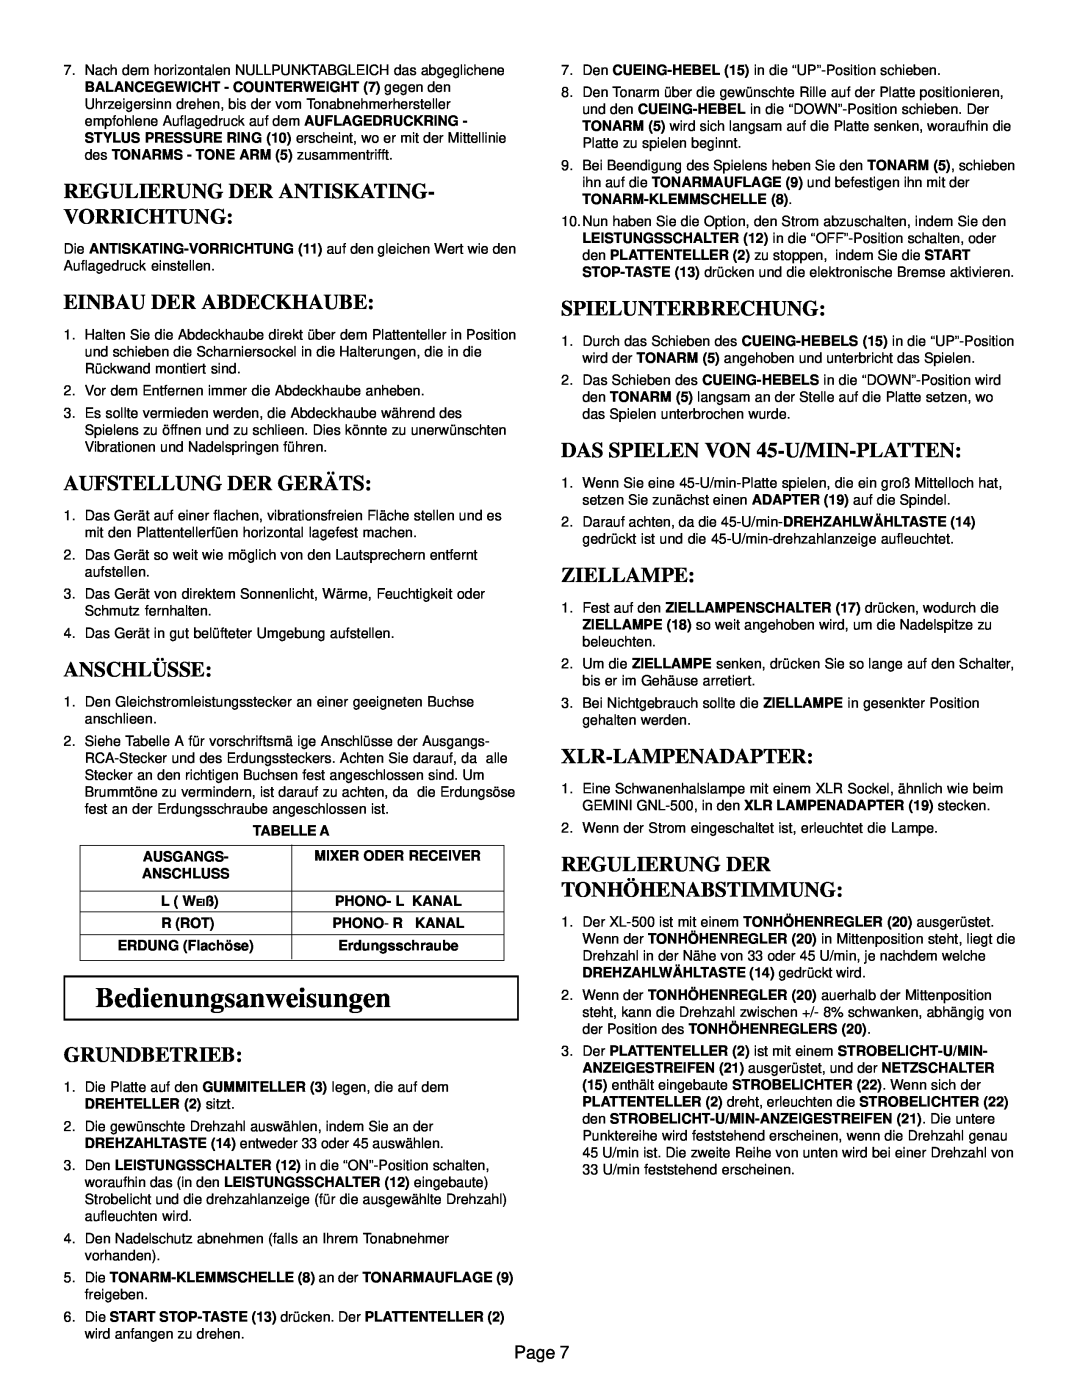 Gemini XL-500 manual Bedienungsanweisungen, Regulierung Der Antiskating- Vorrichtung, Einbau Der Abdeckhaube, Anschlüsse 